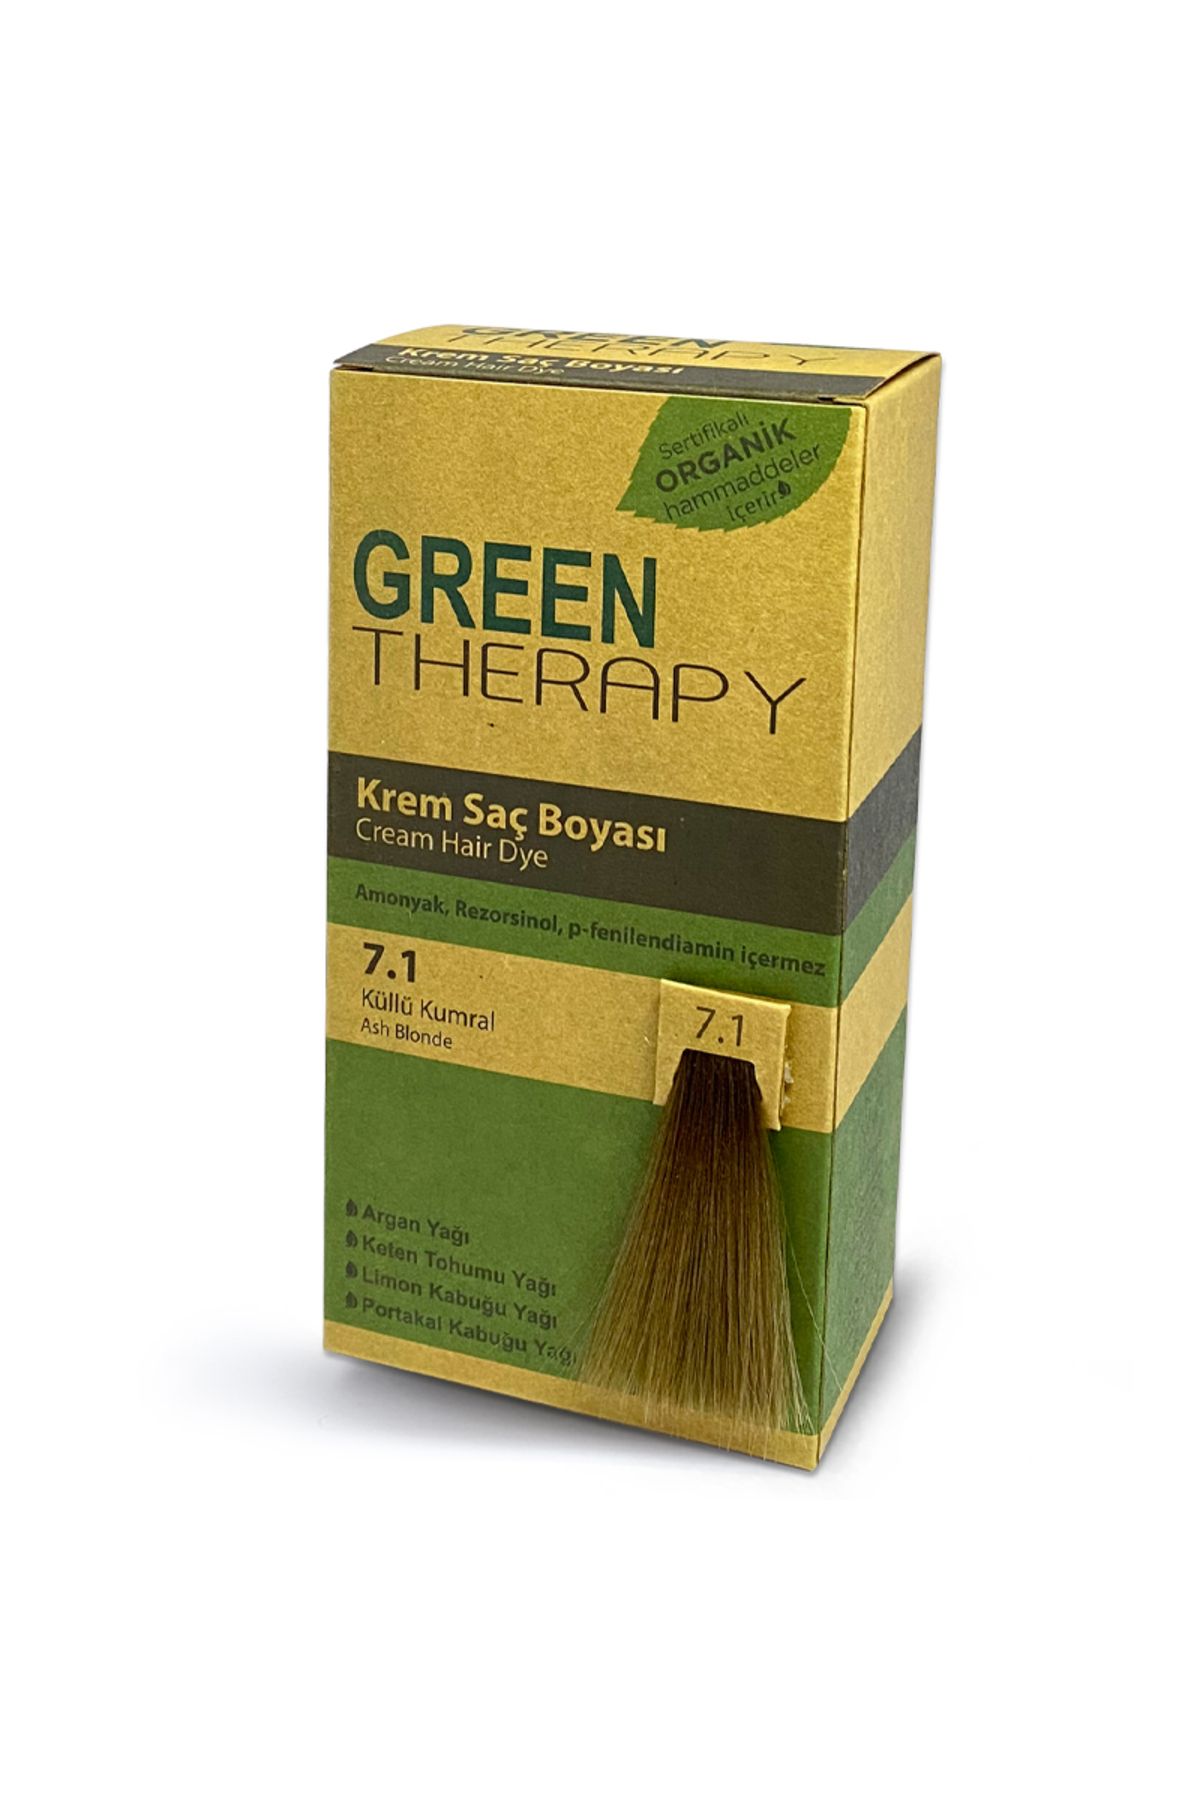 Green Therapy Krem Saç Boyası 7.1 Küllü Kumral